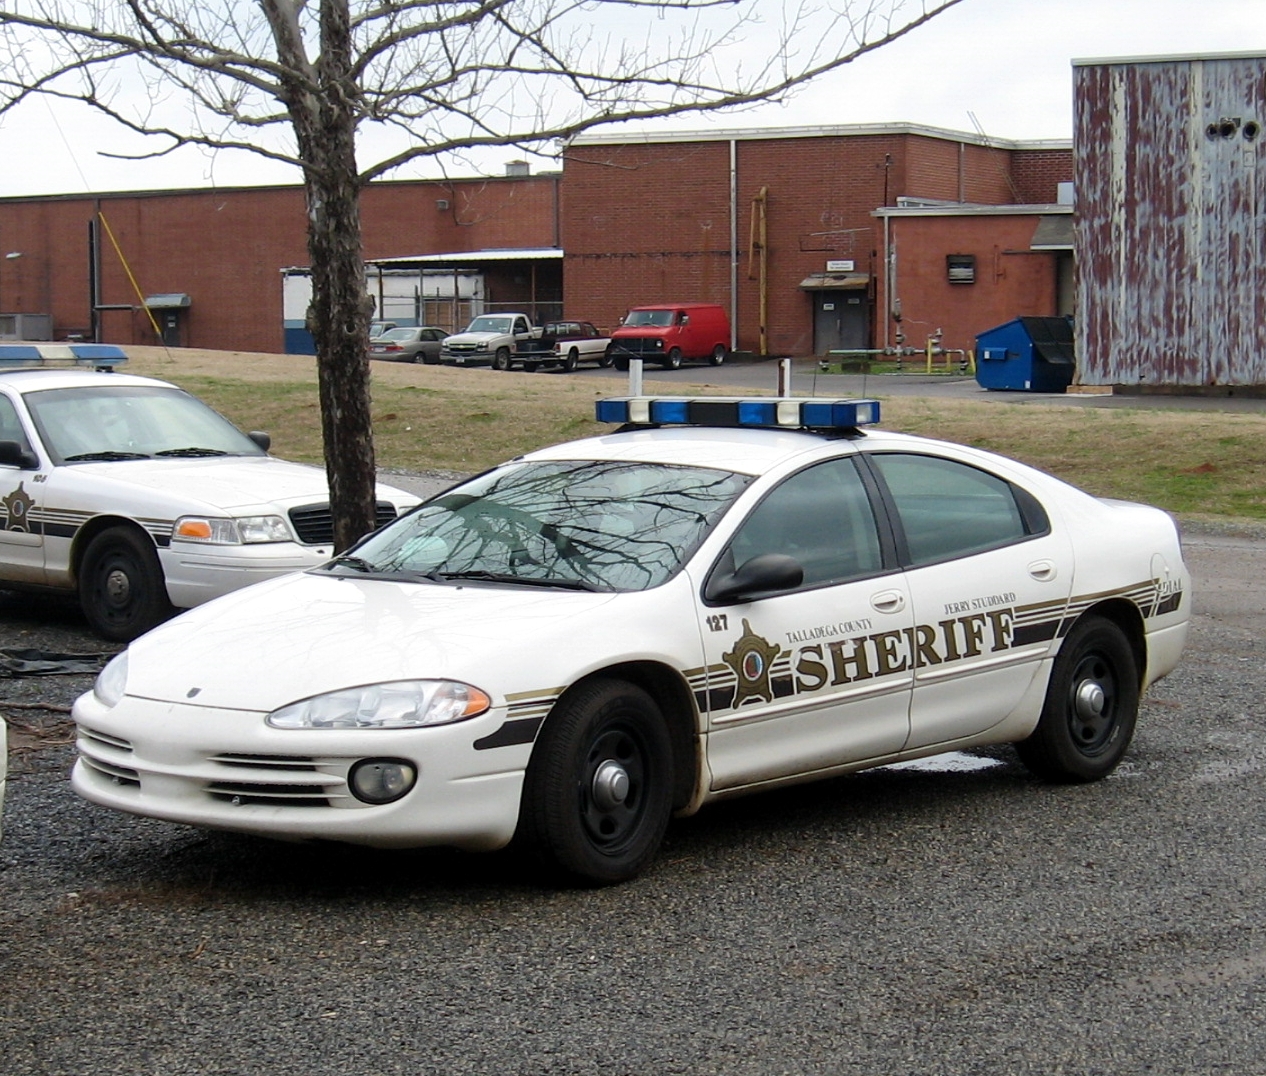 Talladega Sheriff Dodge Intrepid | Flickr - Photo Sharing!